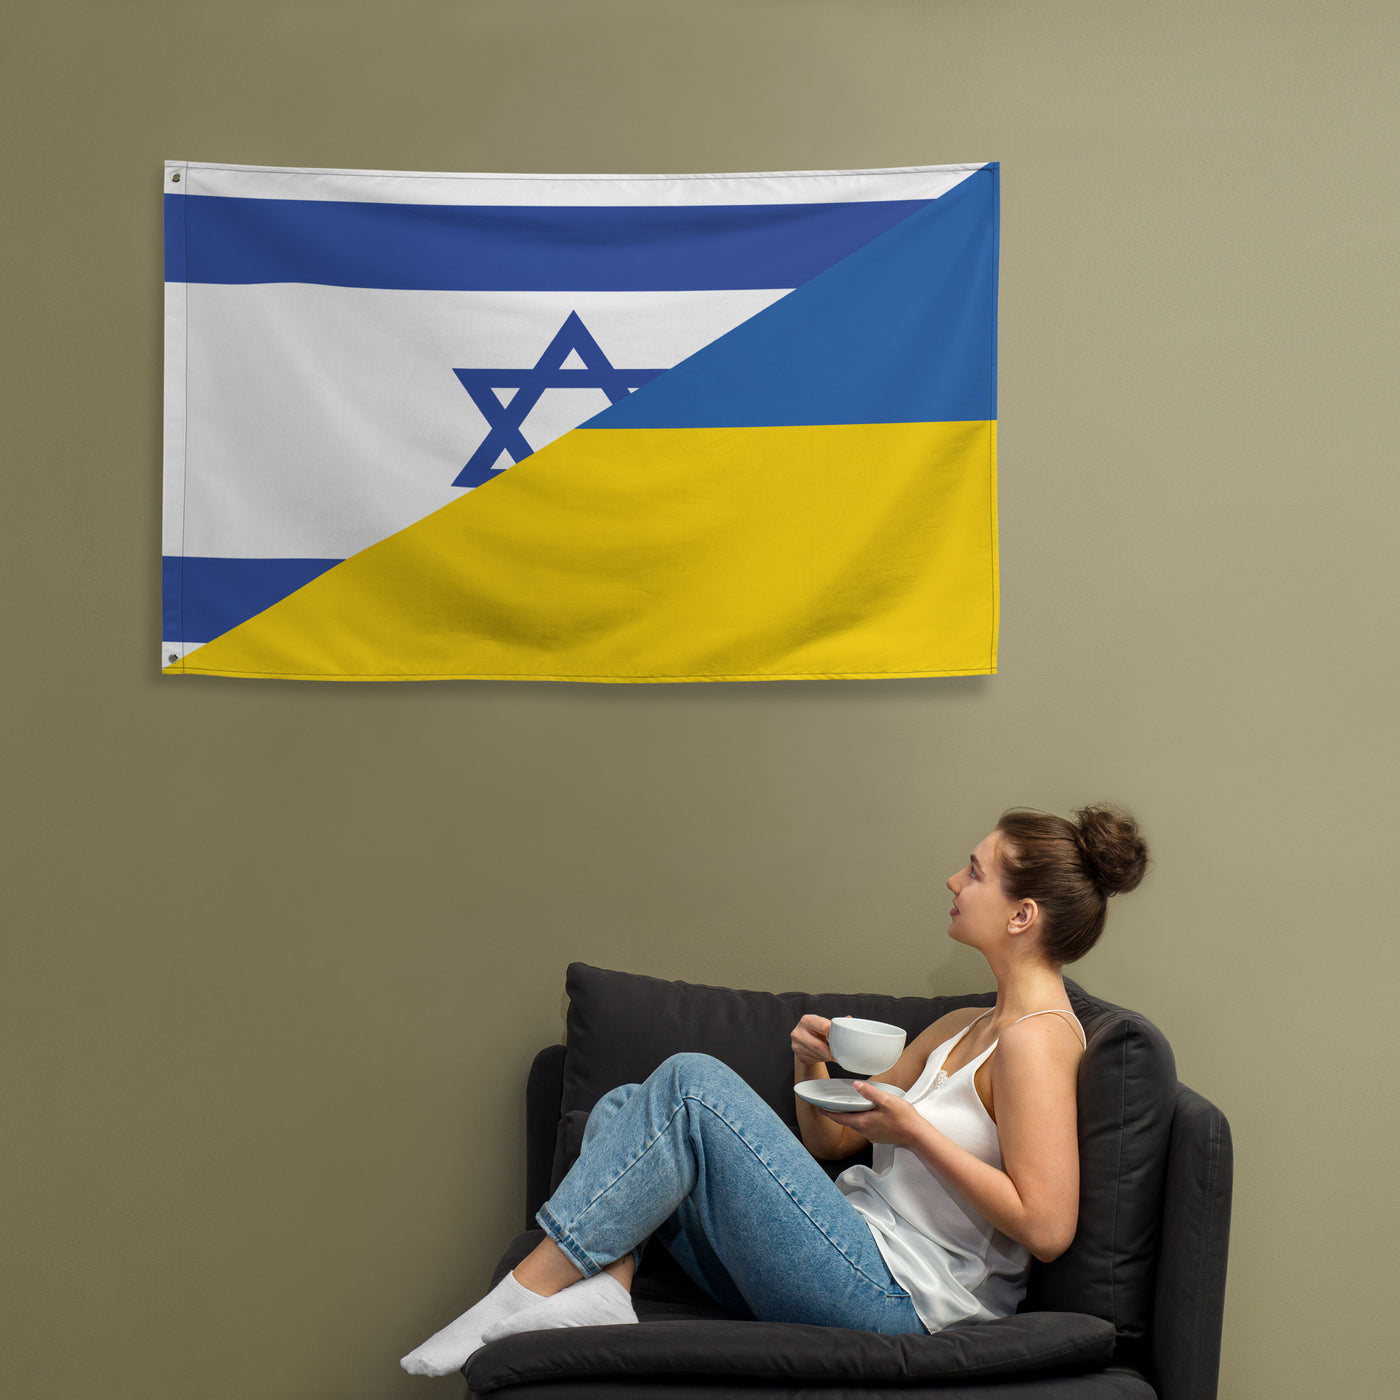 Israel-Ukrainian Flag